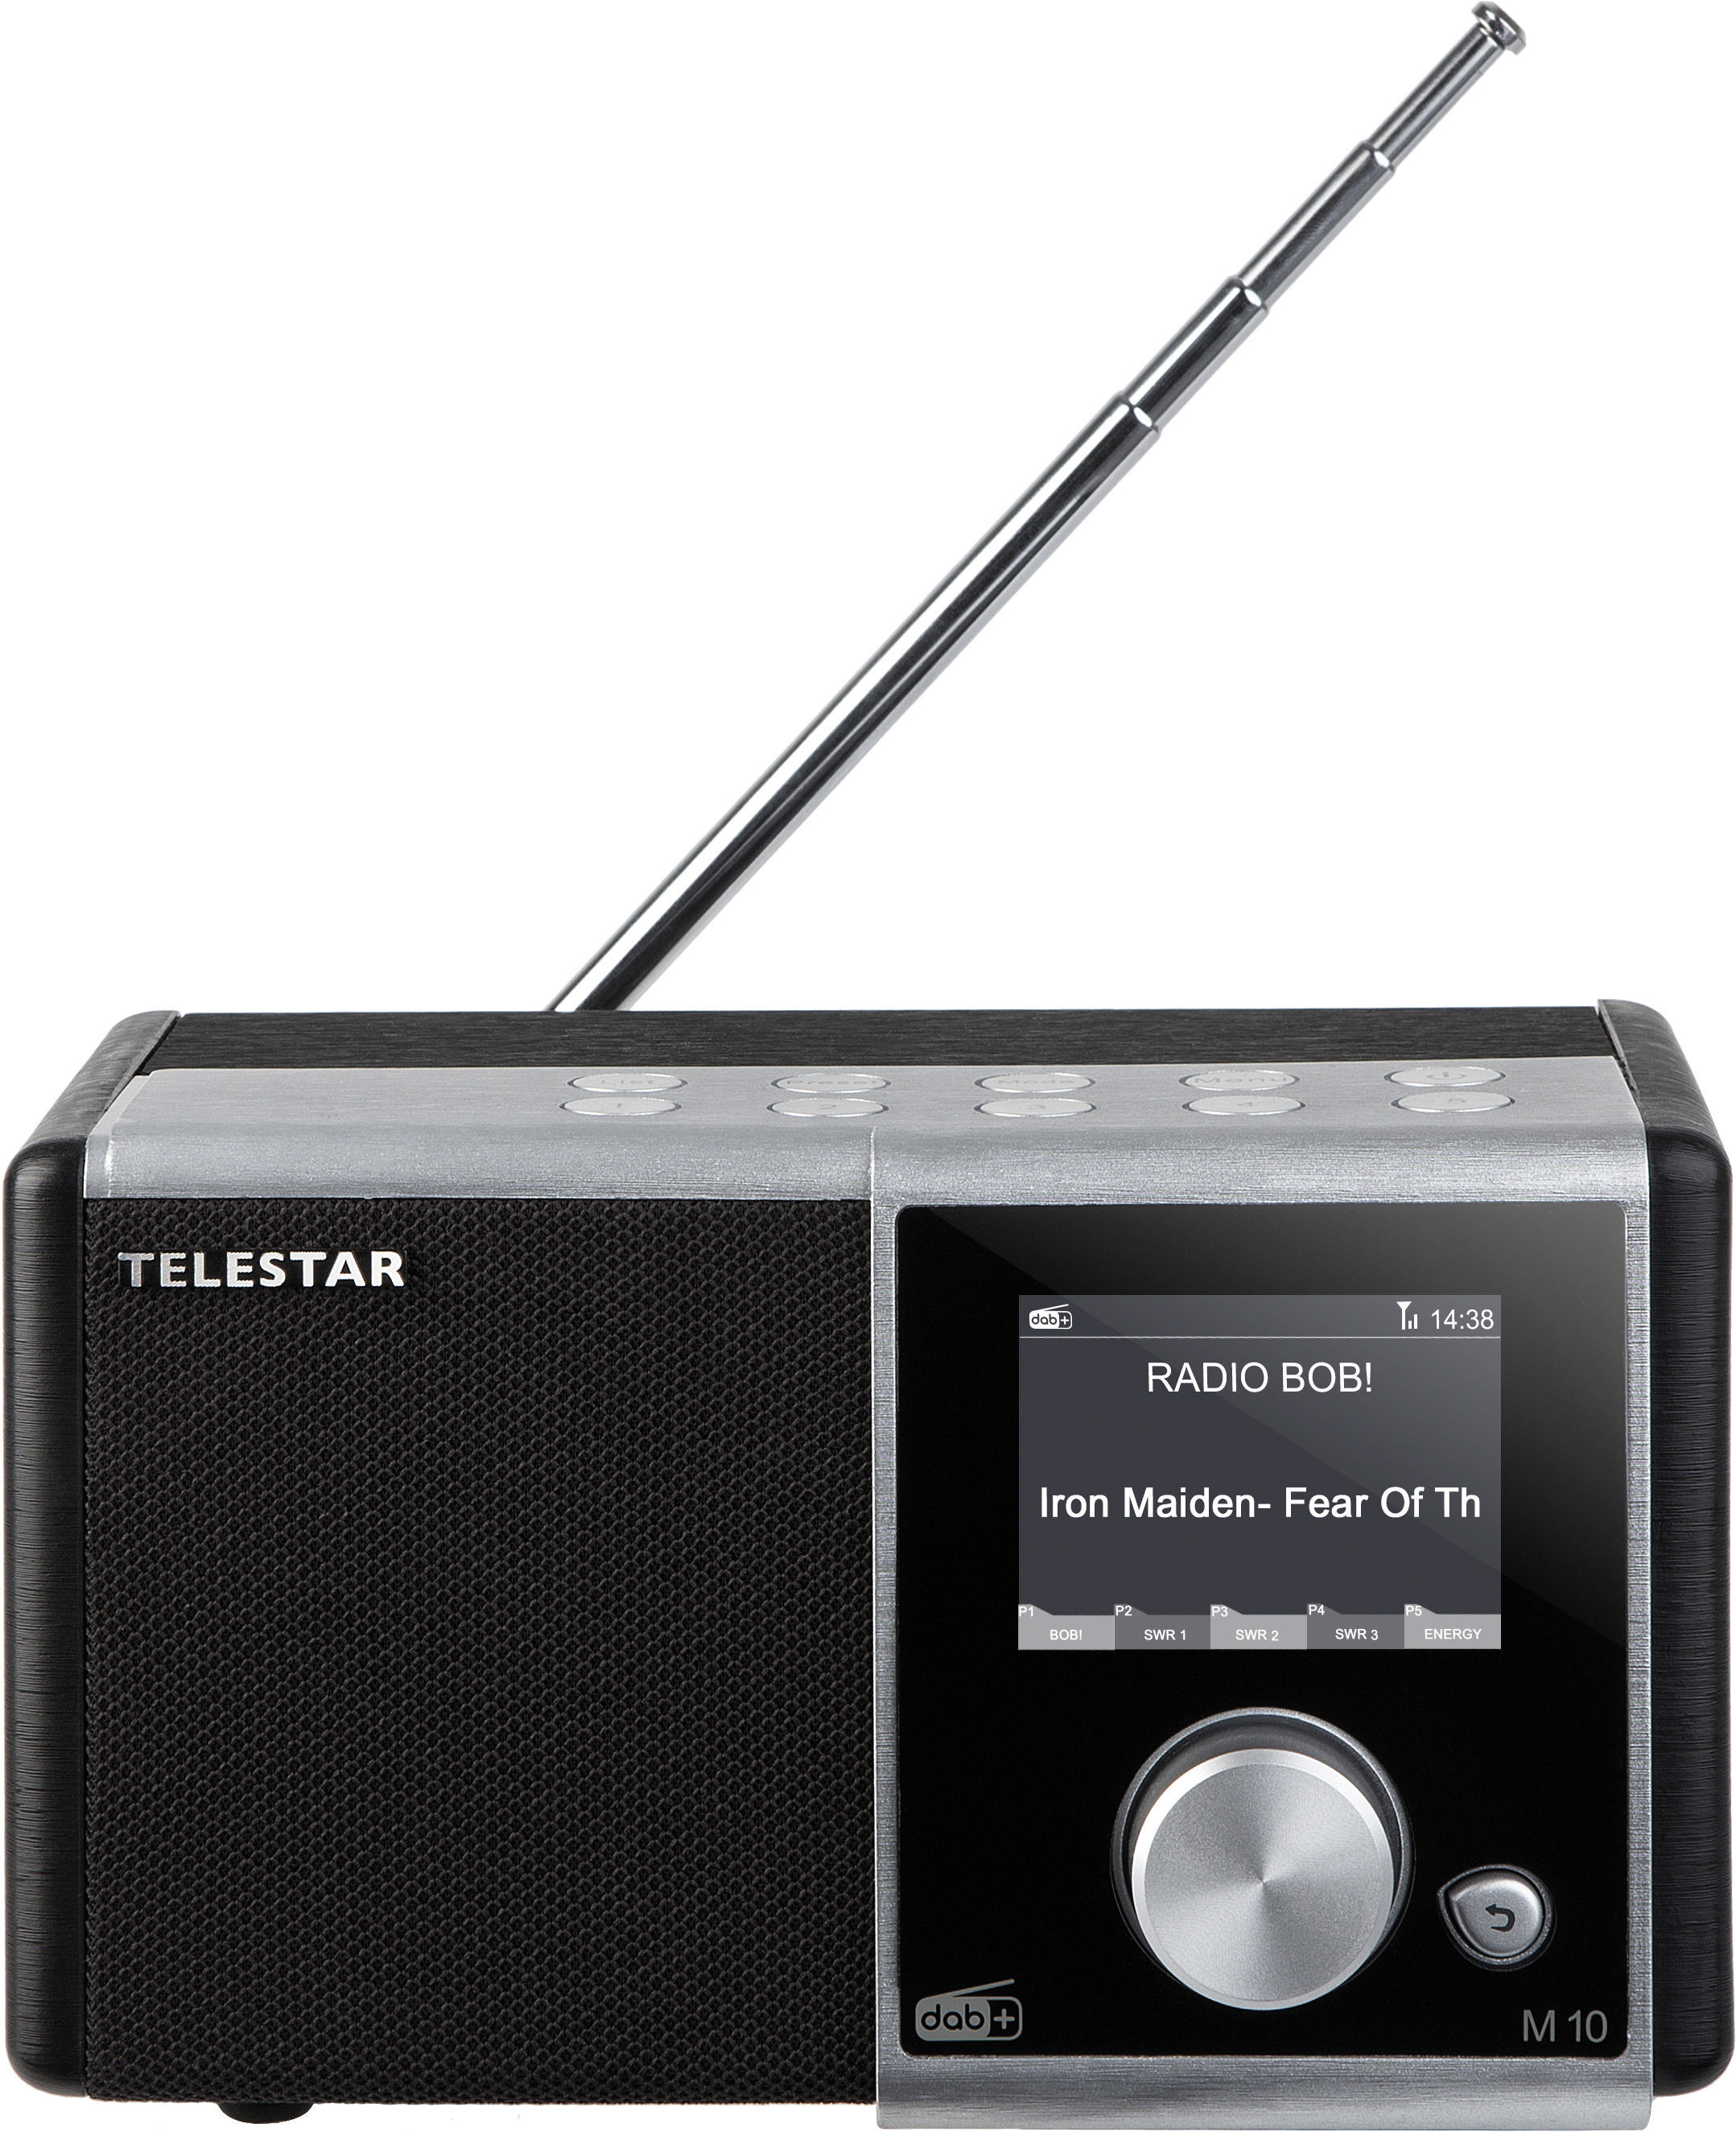 TELESTAR M10 DAB, digital, Radio, Schwarz/Silber DAB+ DAB+, FM